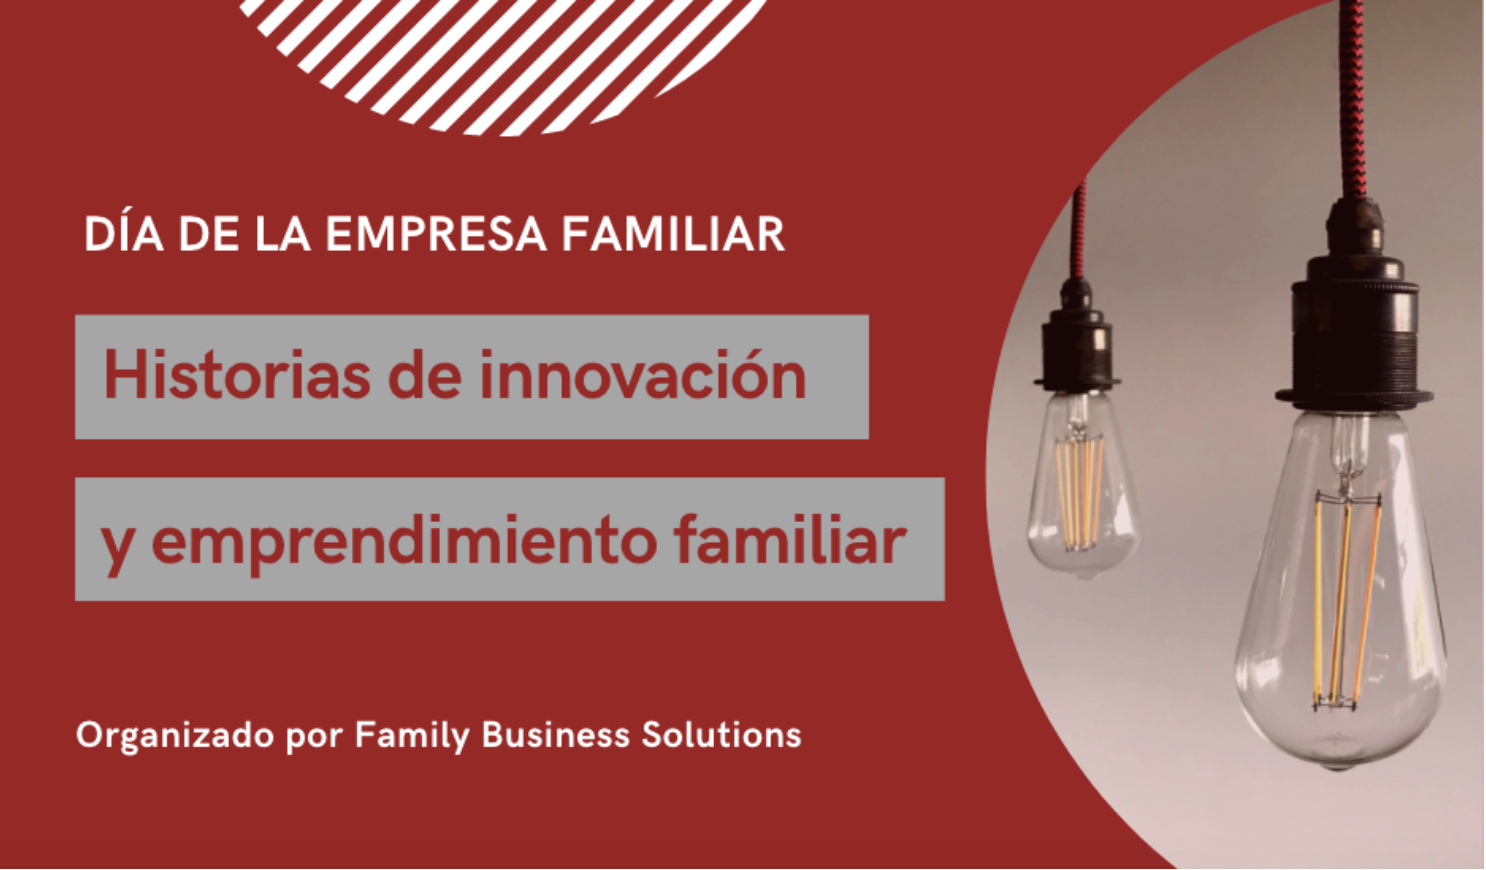 Día de la empresa familiar 2021: Historias de emprendimiento e innovación familiar